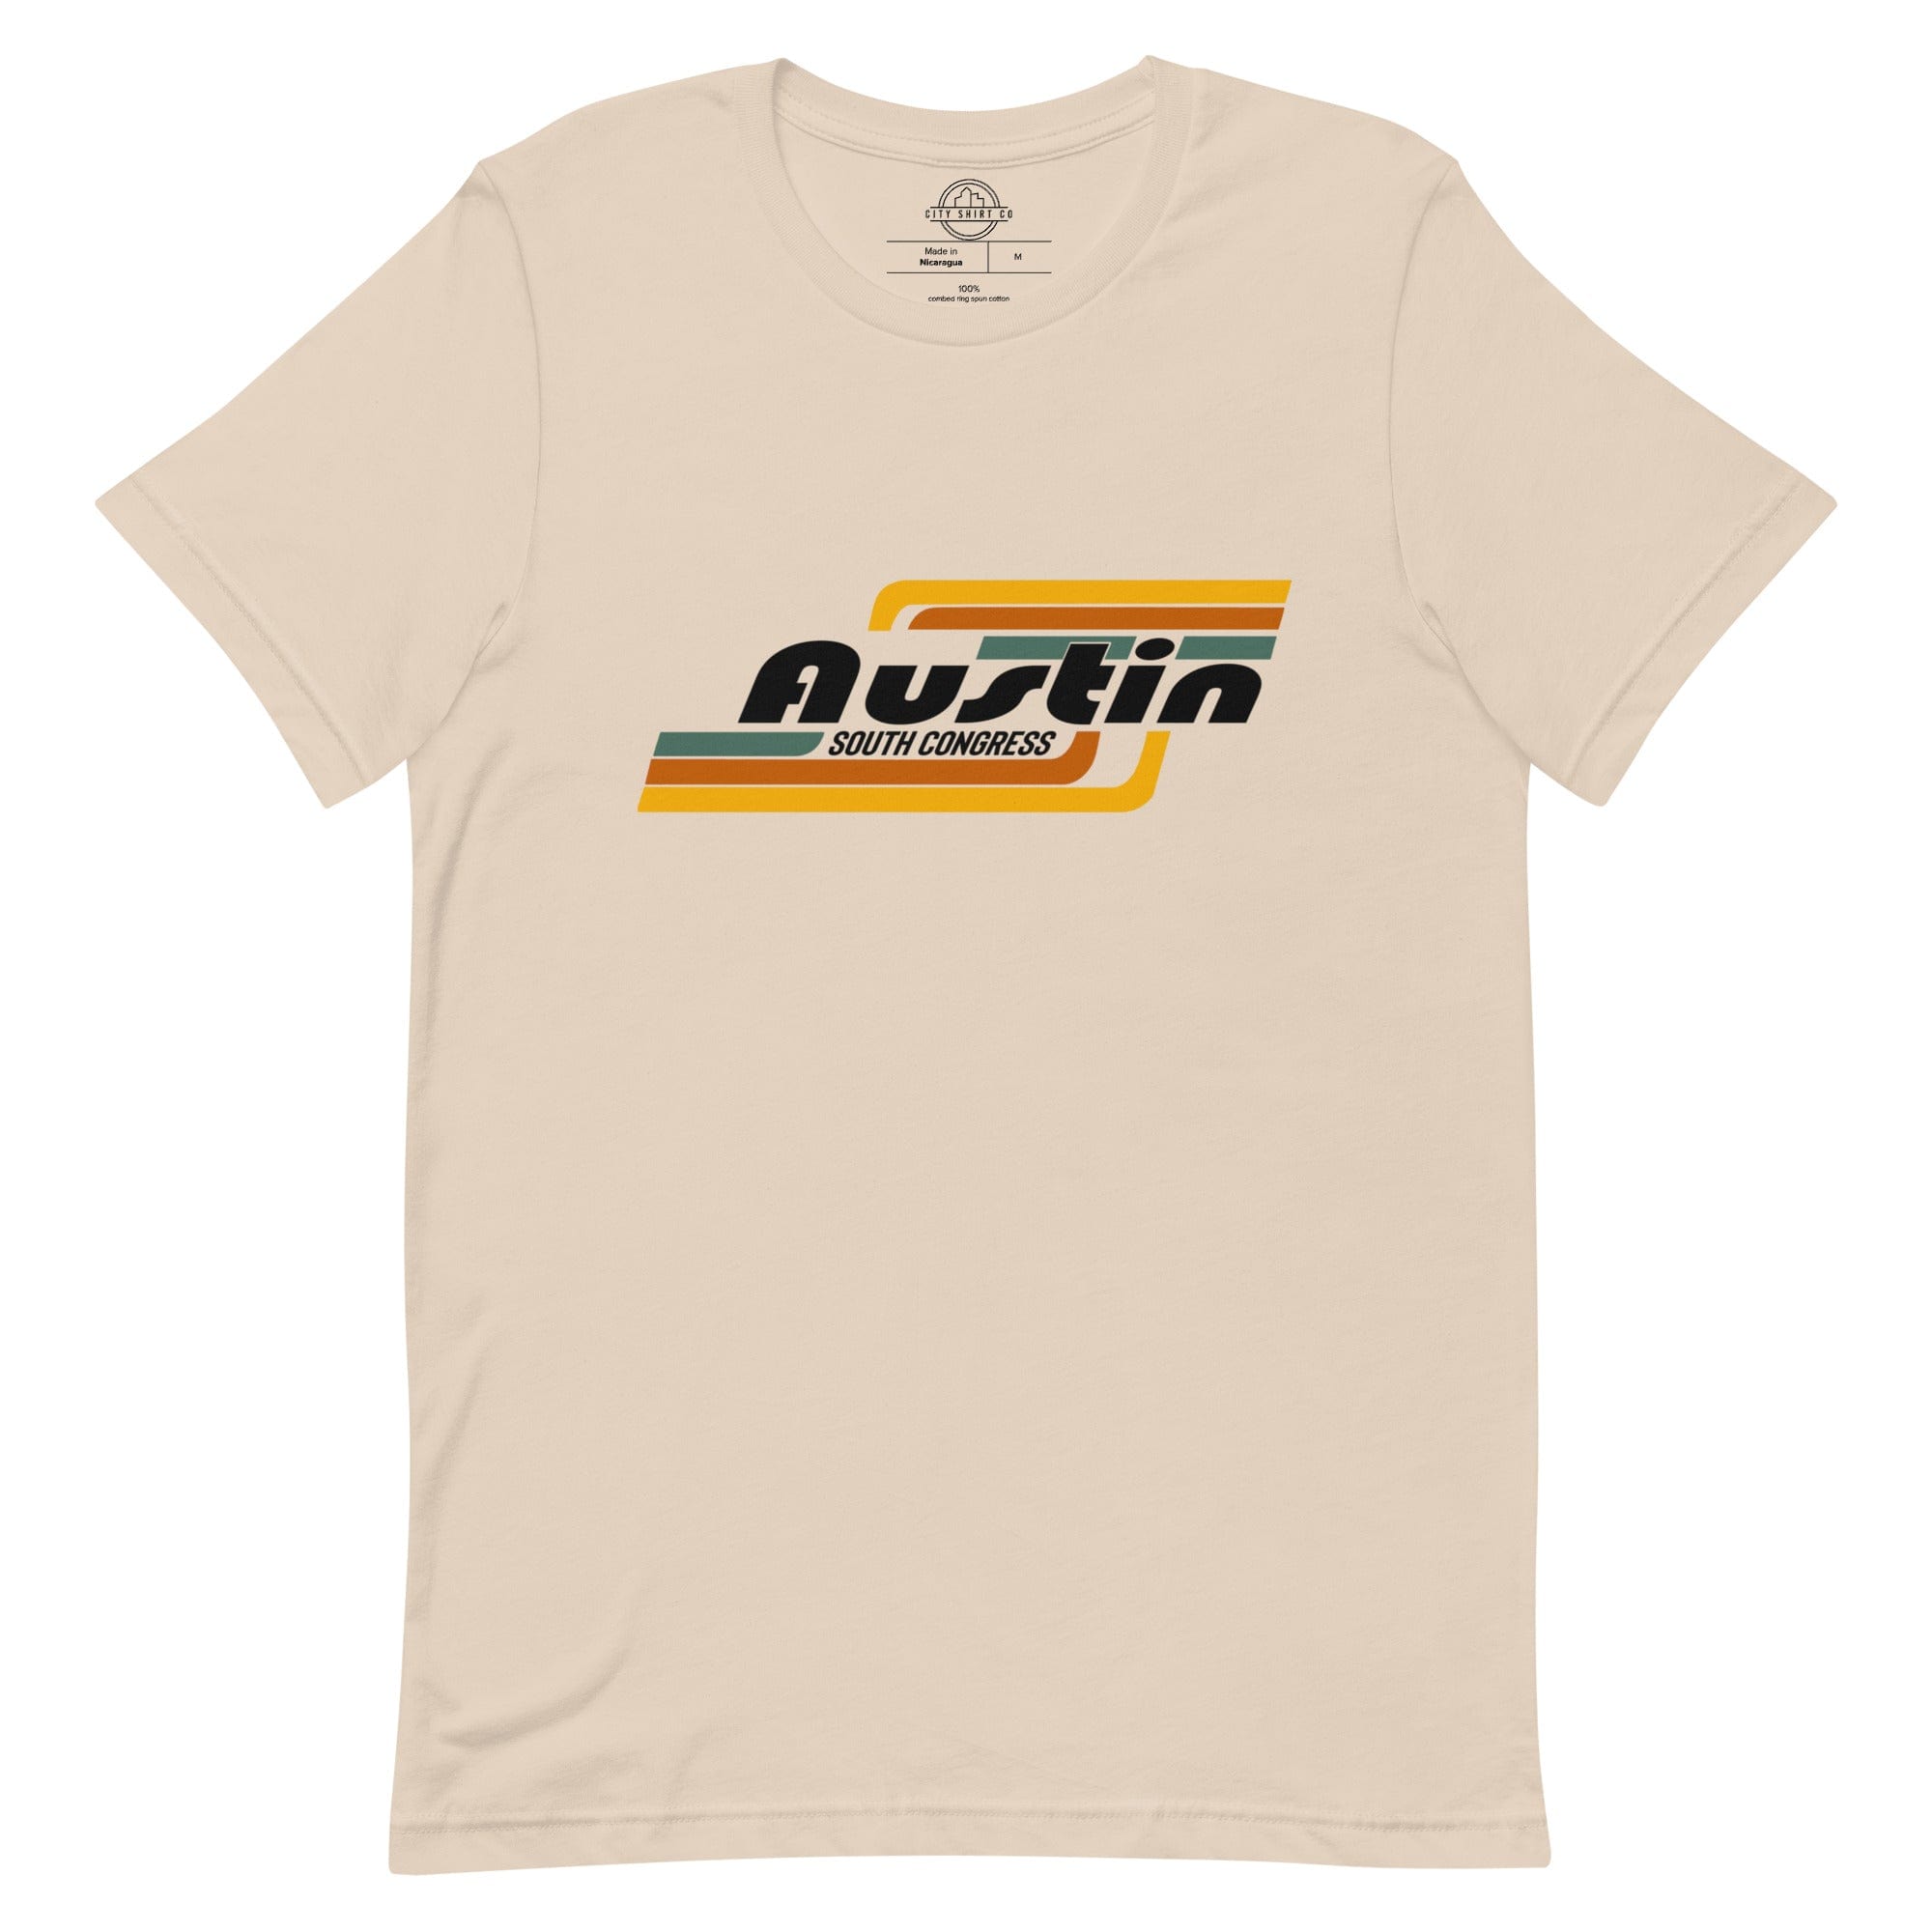 City Shirt Co Austin | South Congress Neighborhood T Shirt Soft Cream / XS